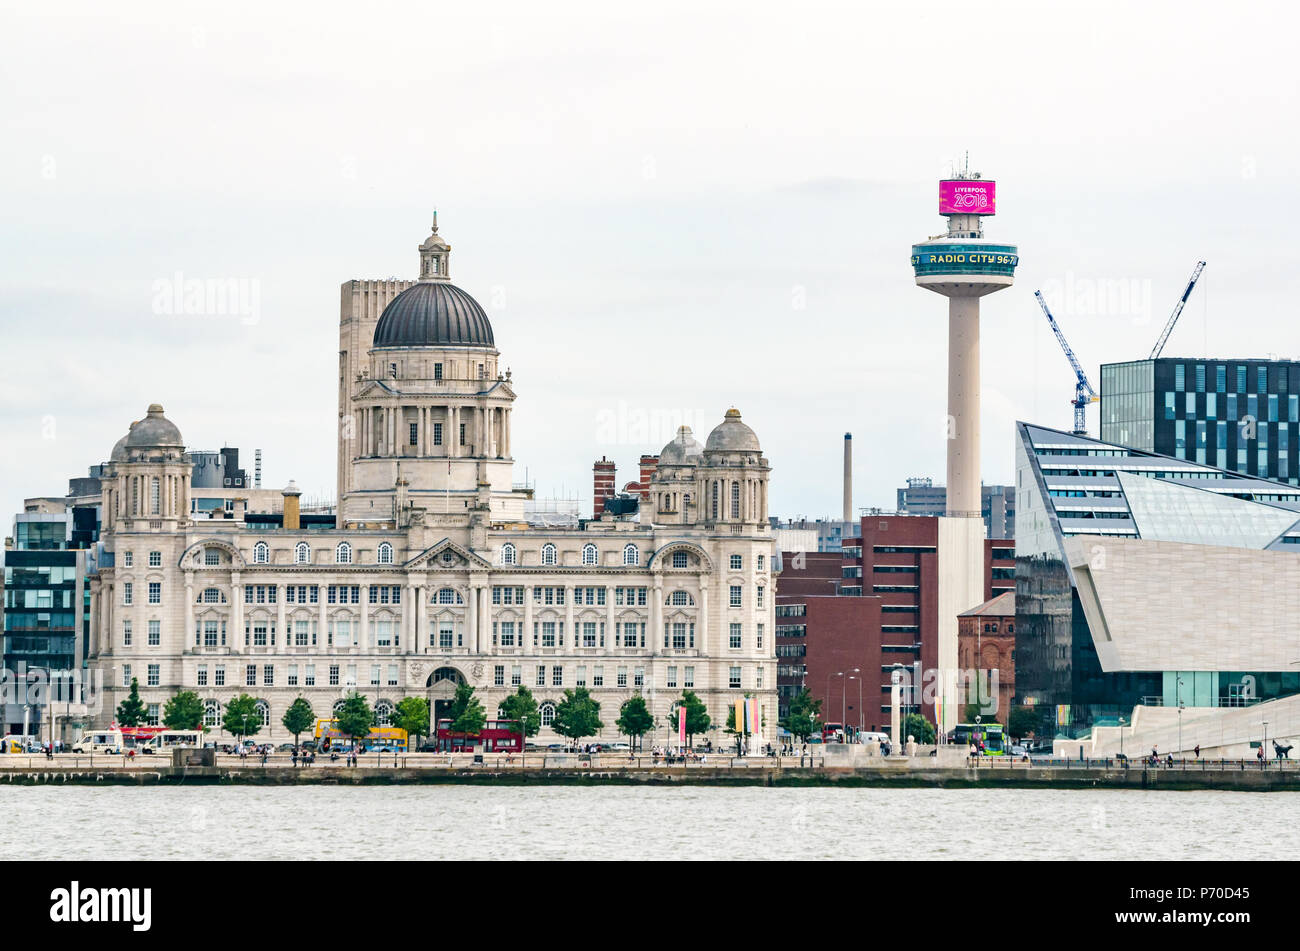 St. John's Beacon Radio City Aussichtsturm und Grand gewölbte Hafen von Liverpool Gebäude, Pier Head Riverside, Liverpool, England, UK Stockfoto